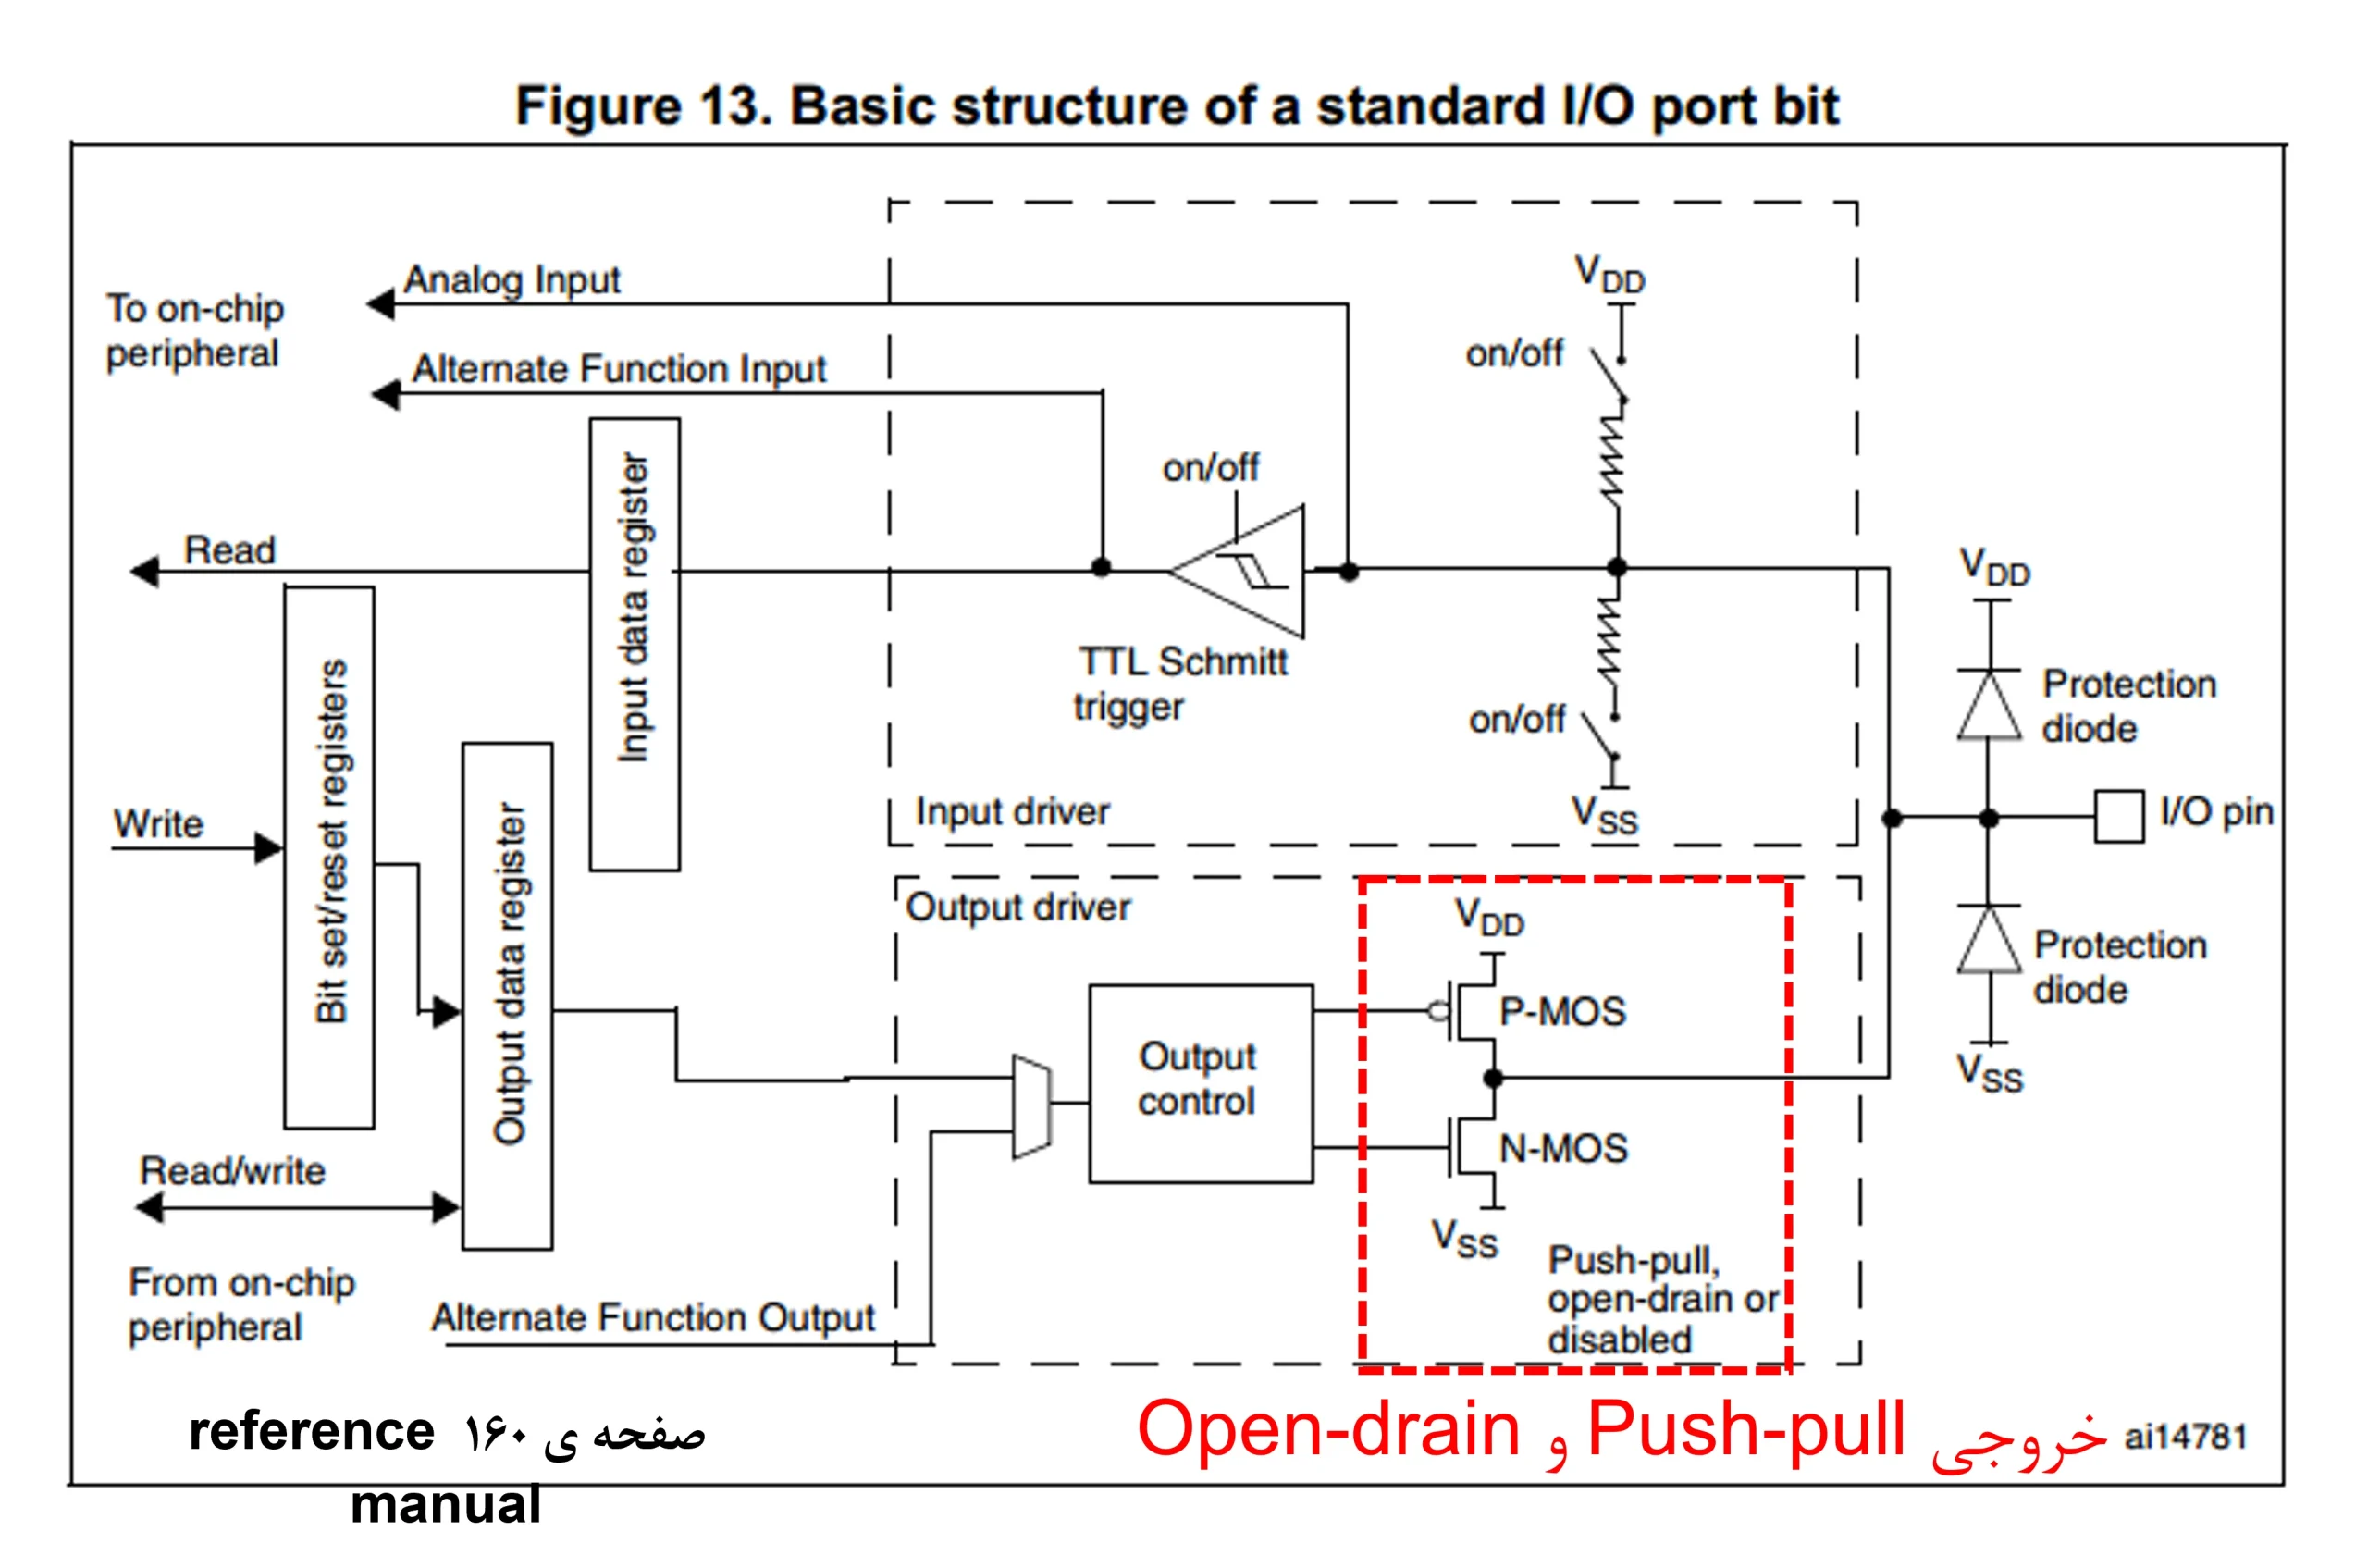 خروجی push-pull و open-drain در درایور خروجی پورت های میکروکنترلر STM32F103